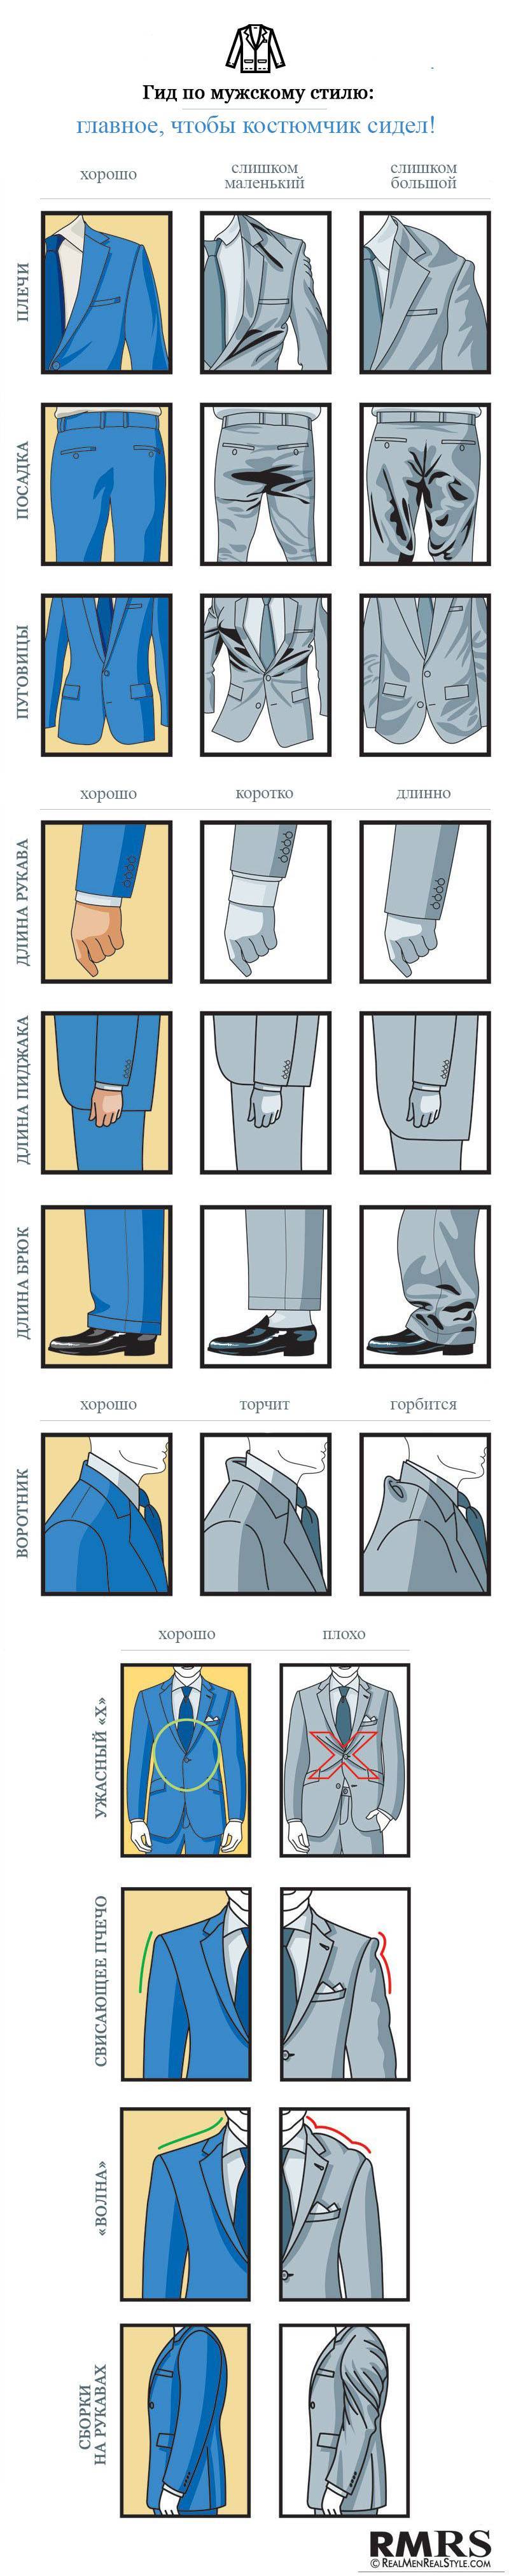 Как правильно выбрать мужской и женский пиджак: полезные советы по выбору пиджака